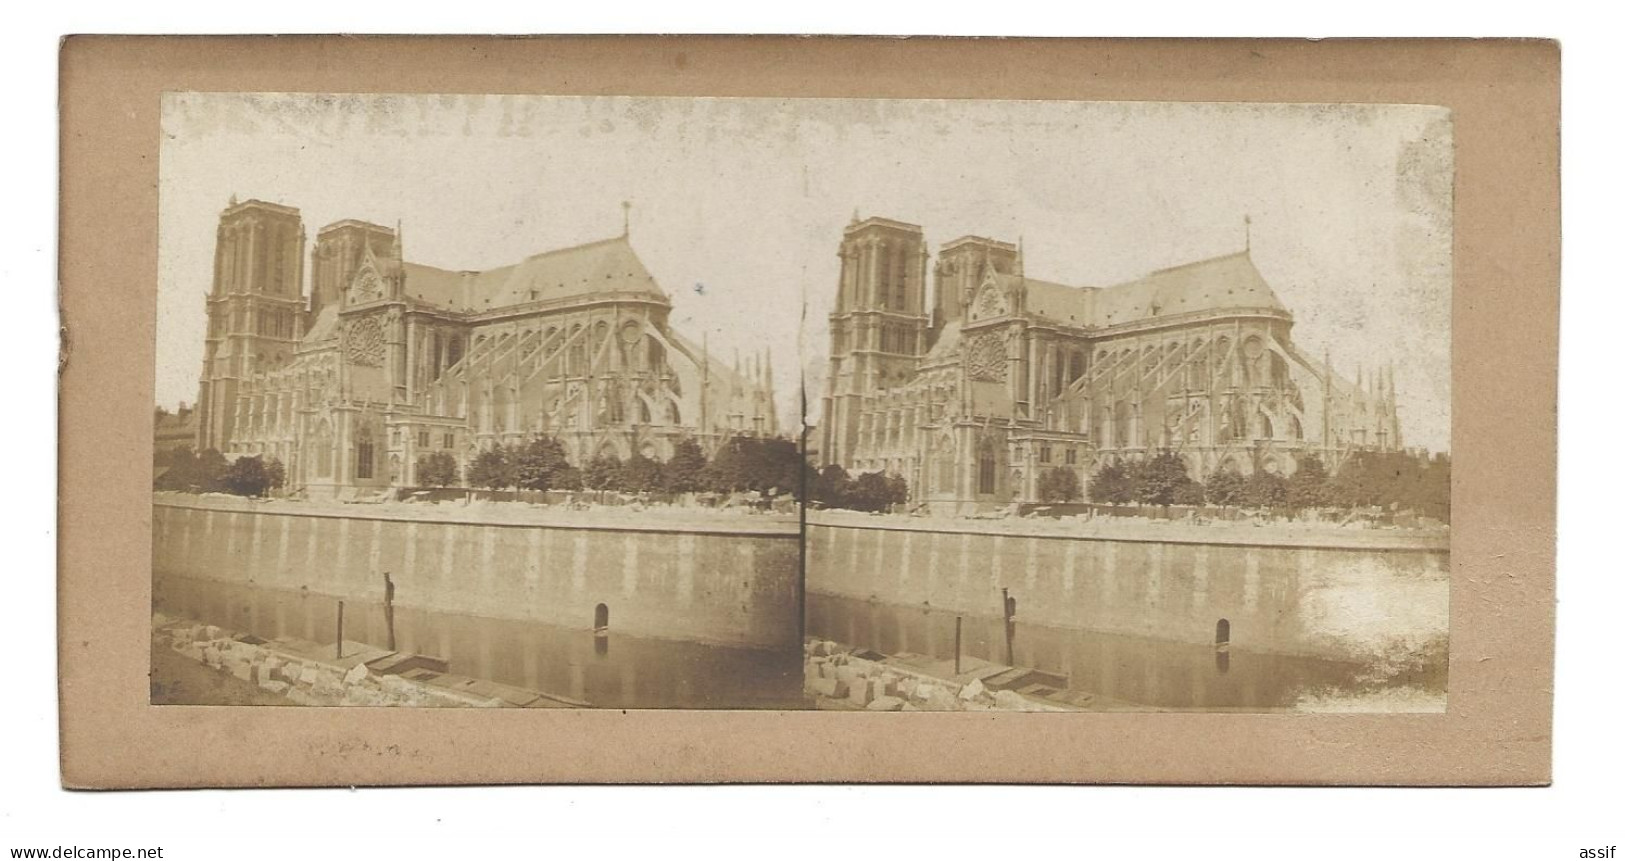 Paris Notre Dame ( Sans Sa Flèche - Avant 1860 ) Photographie Stéréoscopique - Auteur ? - Stereoscopio